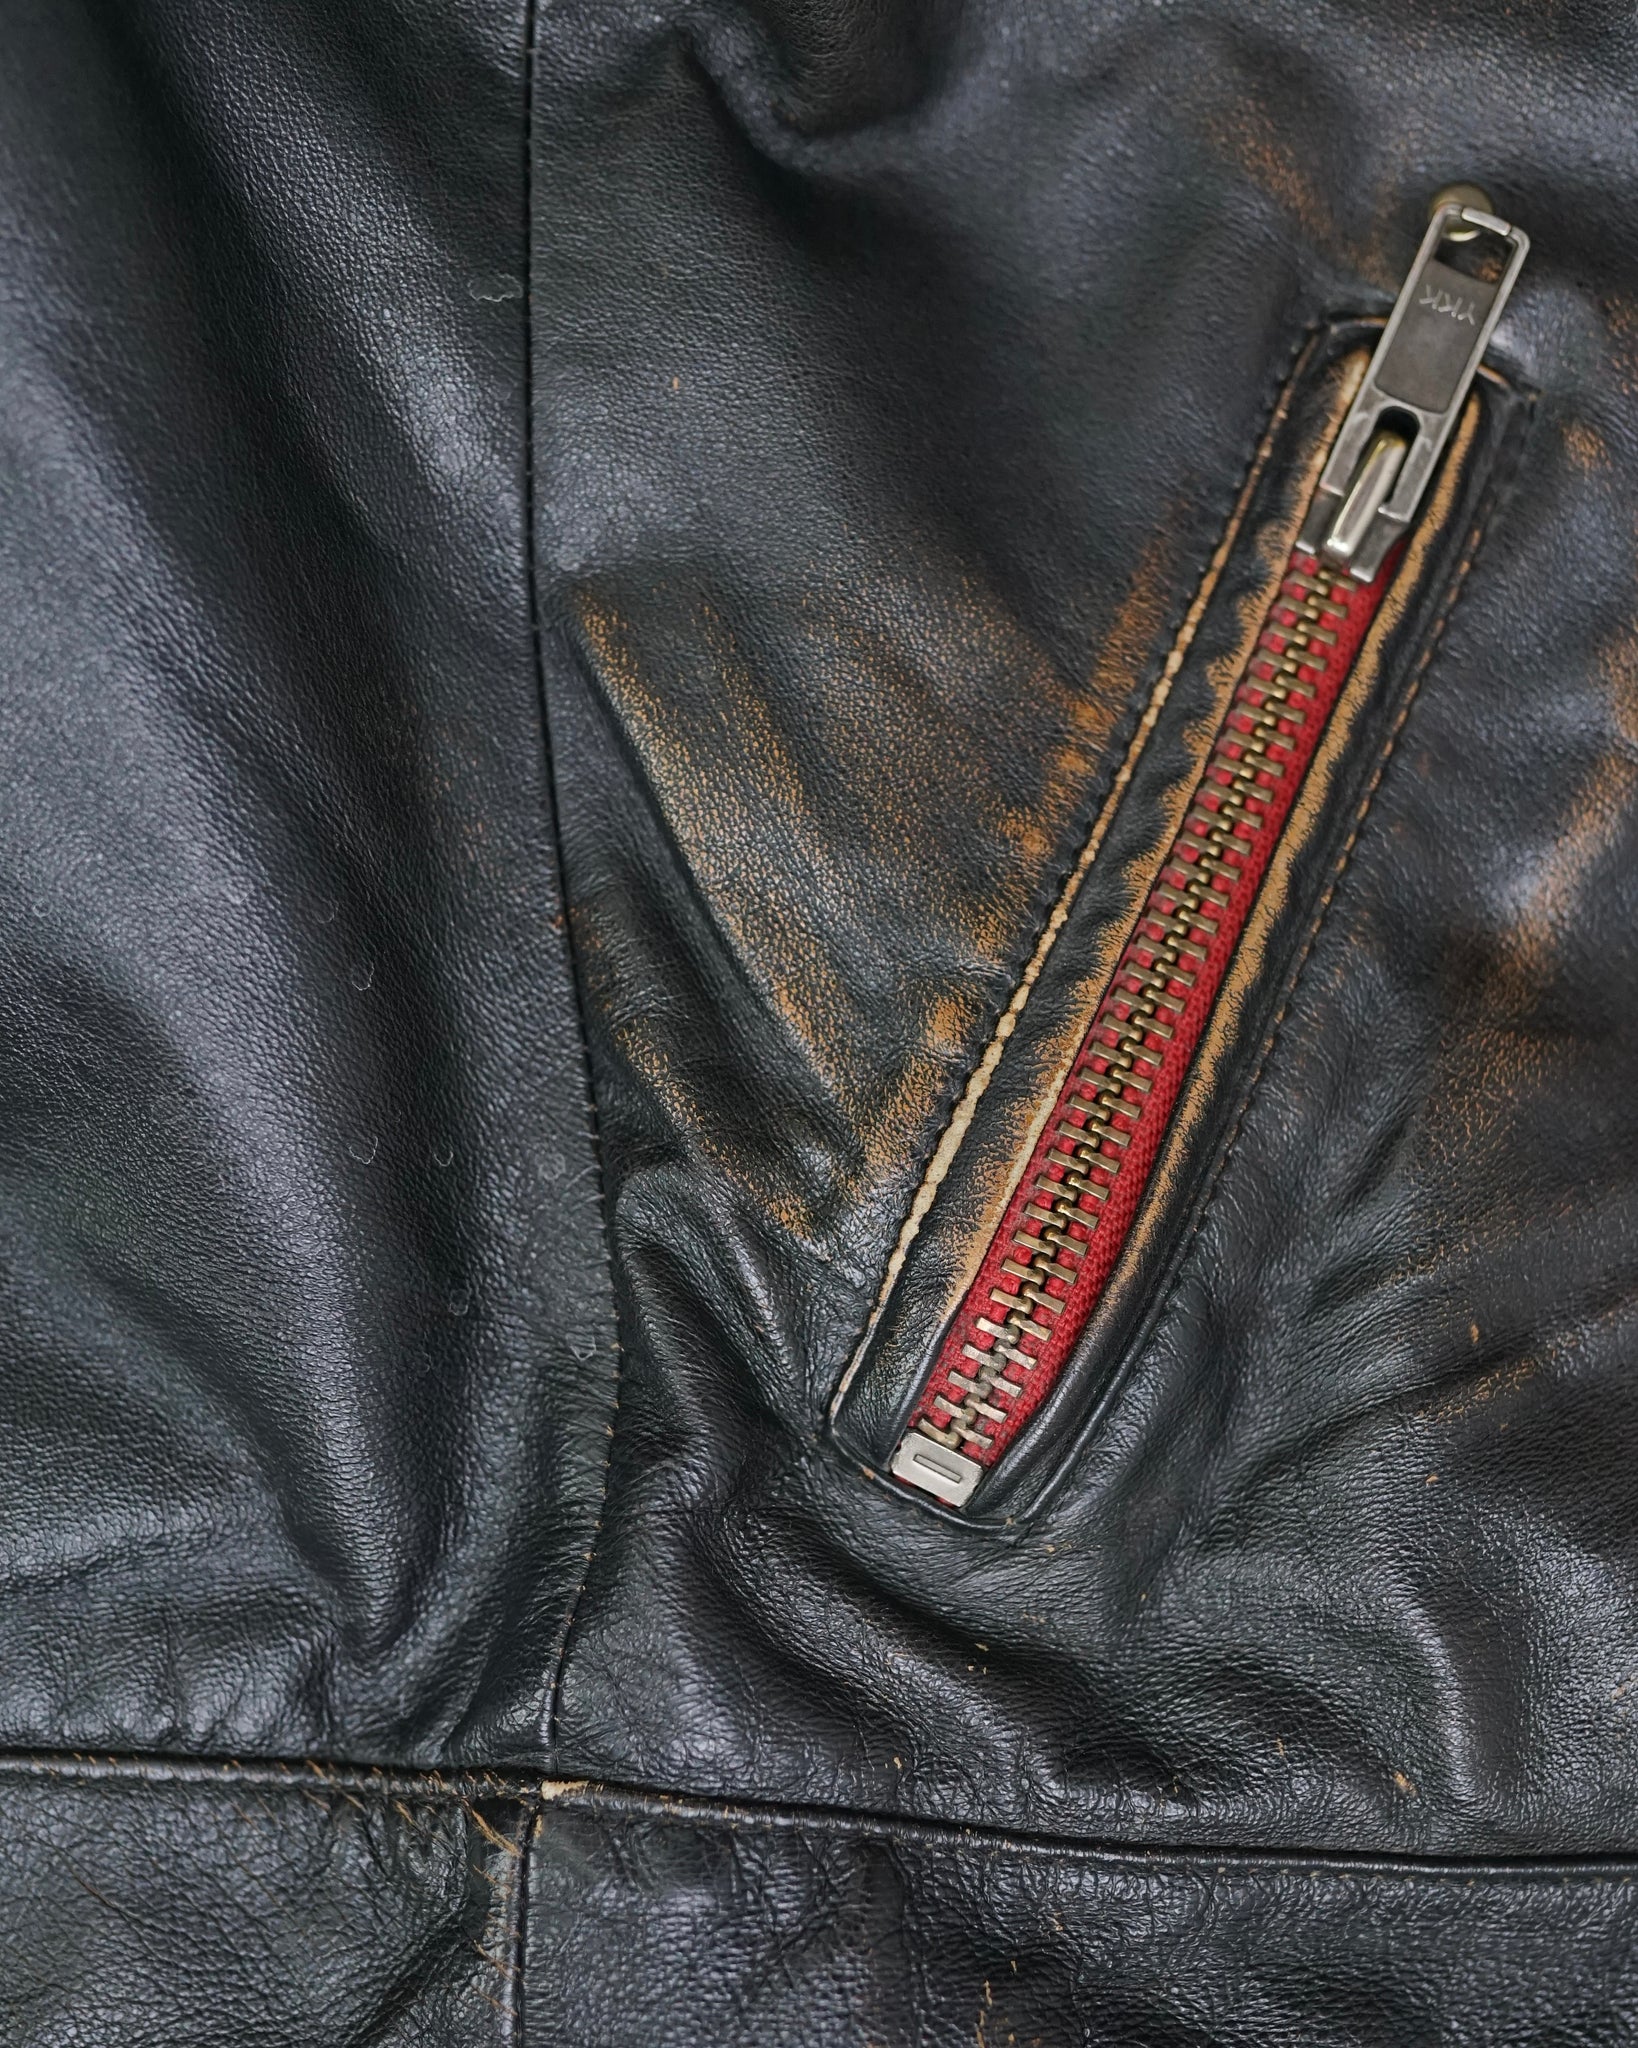 danier biker leather jacket